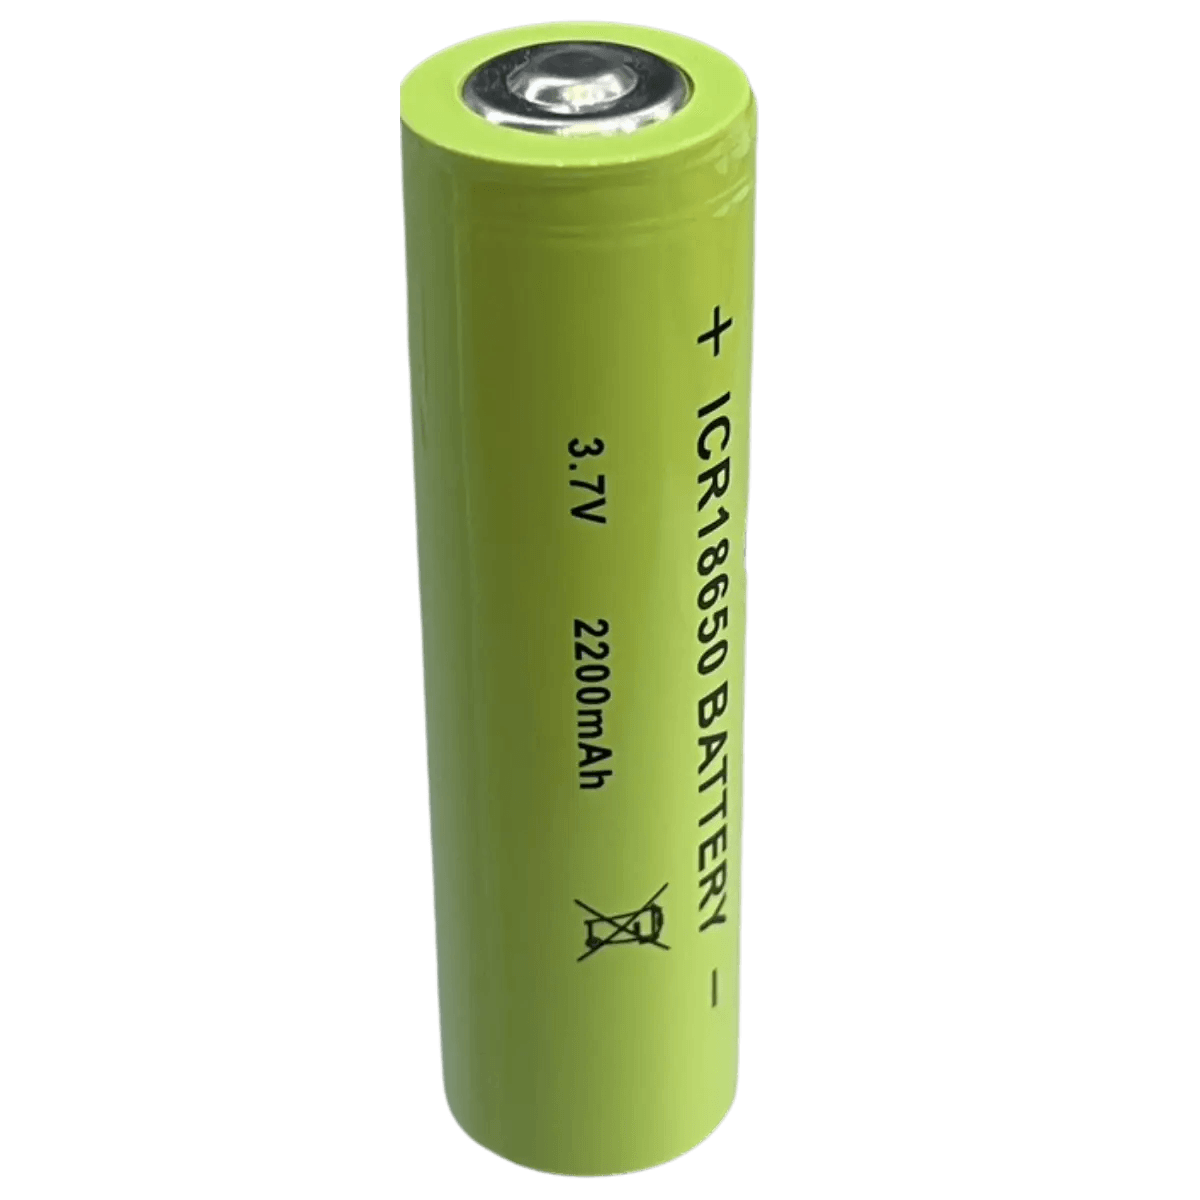 Battery 18650 Li-ion 3.7v 3200mAh Tab for Mounting